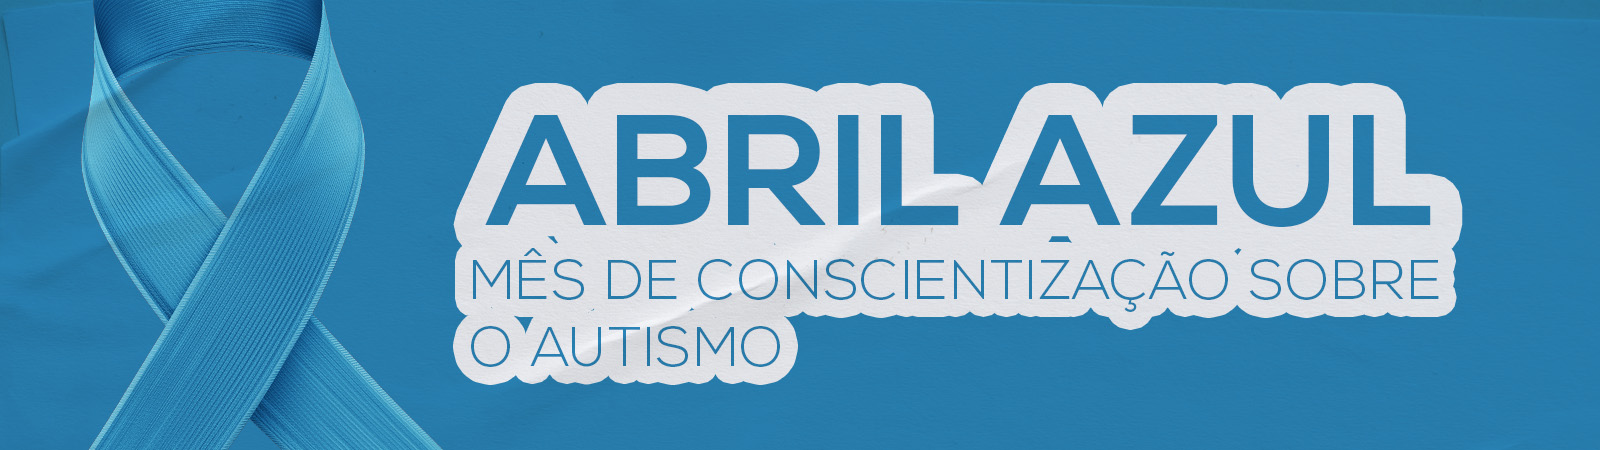 banner alusivo ao abril azul mês de conscientização sobre o autismo